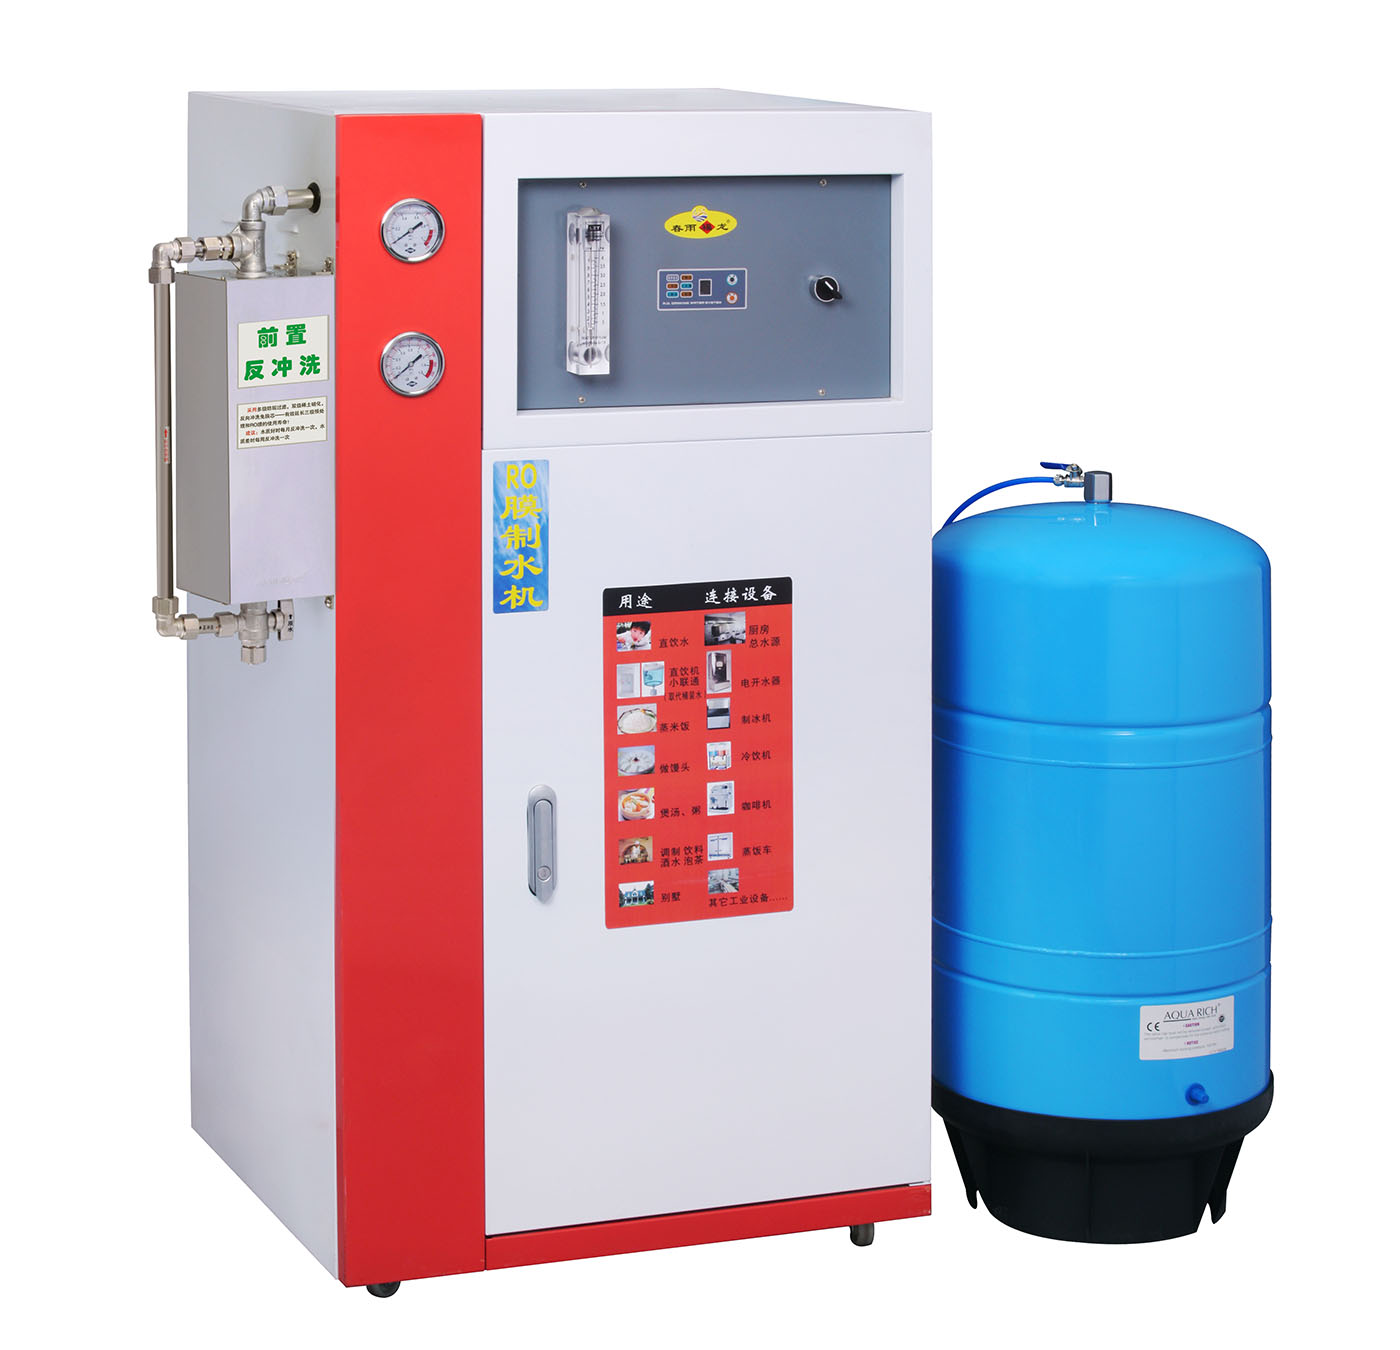 春雨福龙CY-B400W型商用RO膜反渗透纯水机(直饮机) 400加仑/天 标配11加仑储水罐